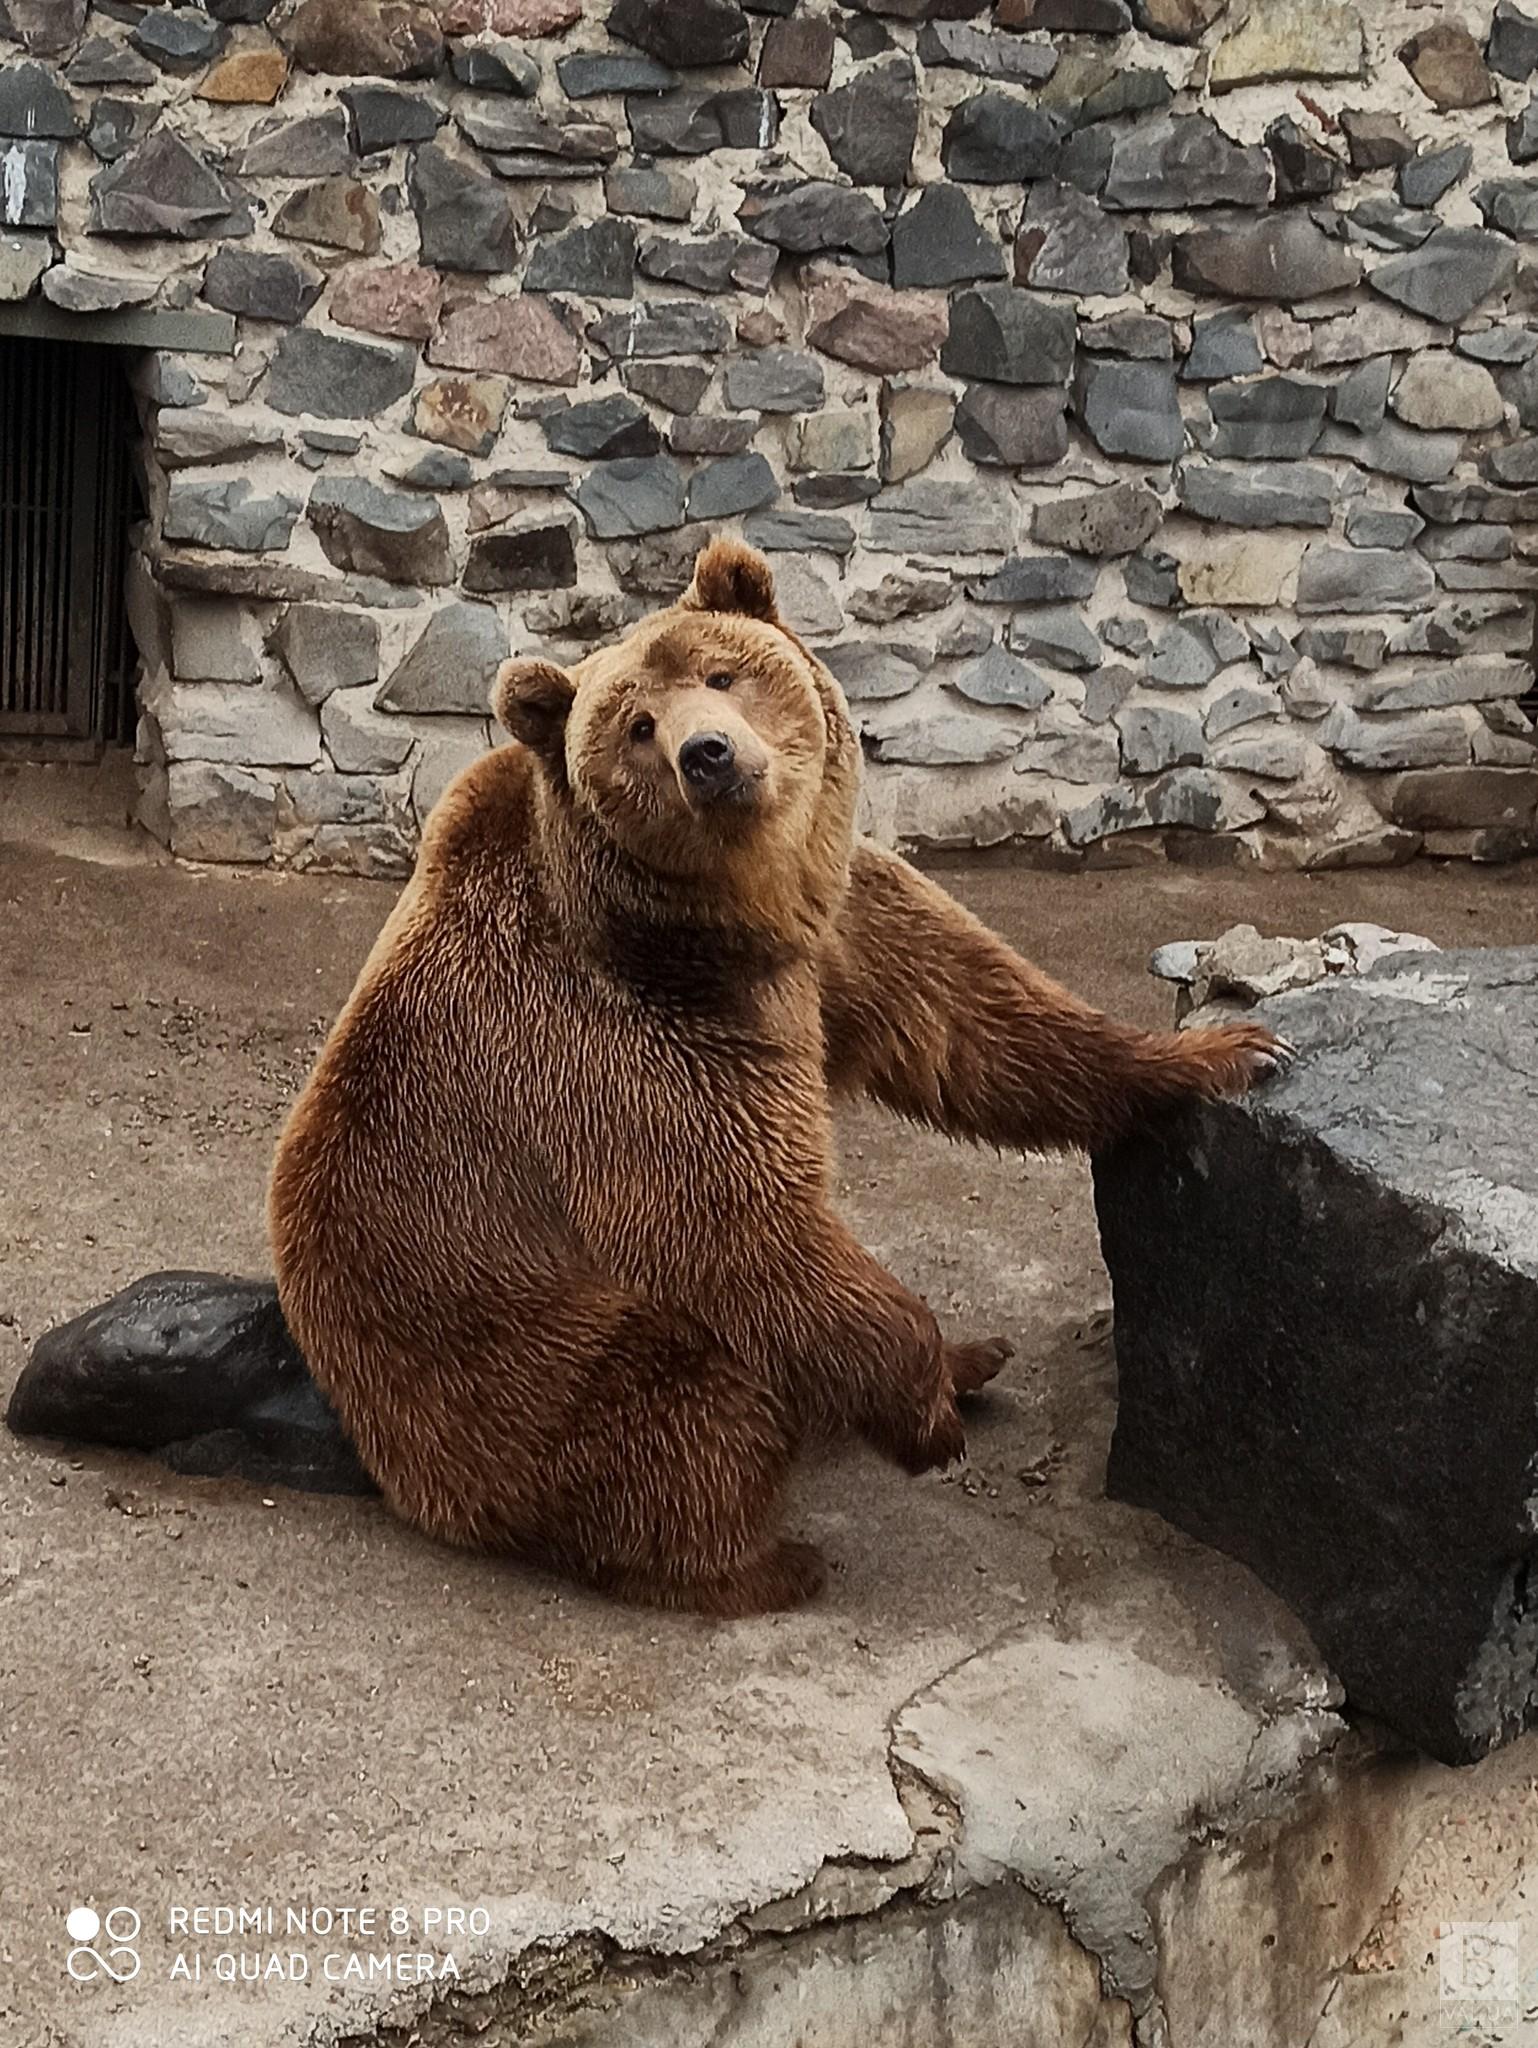 Тепла погода ввела в оману: у Менському зоопарку два ведмеді вийшли зі сплячки